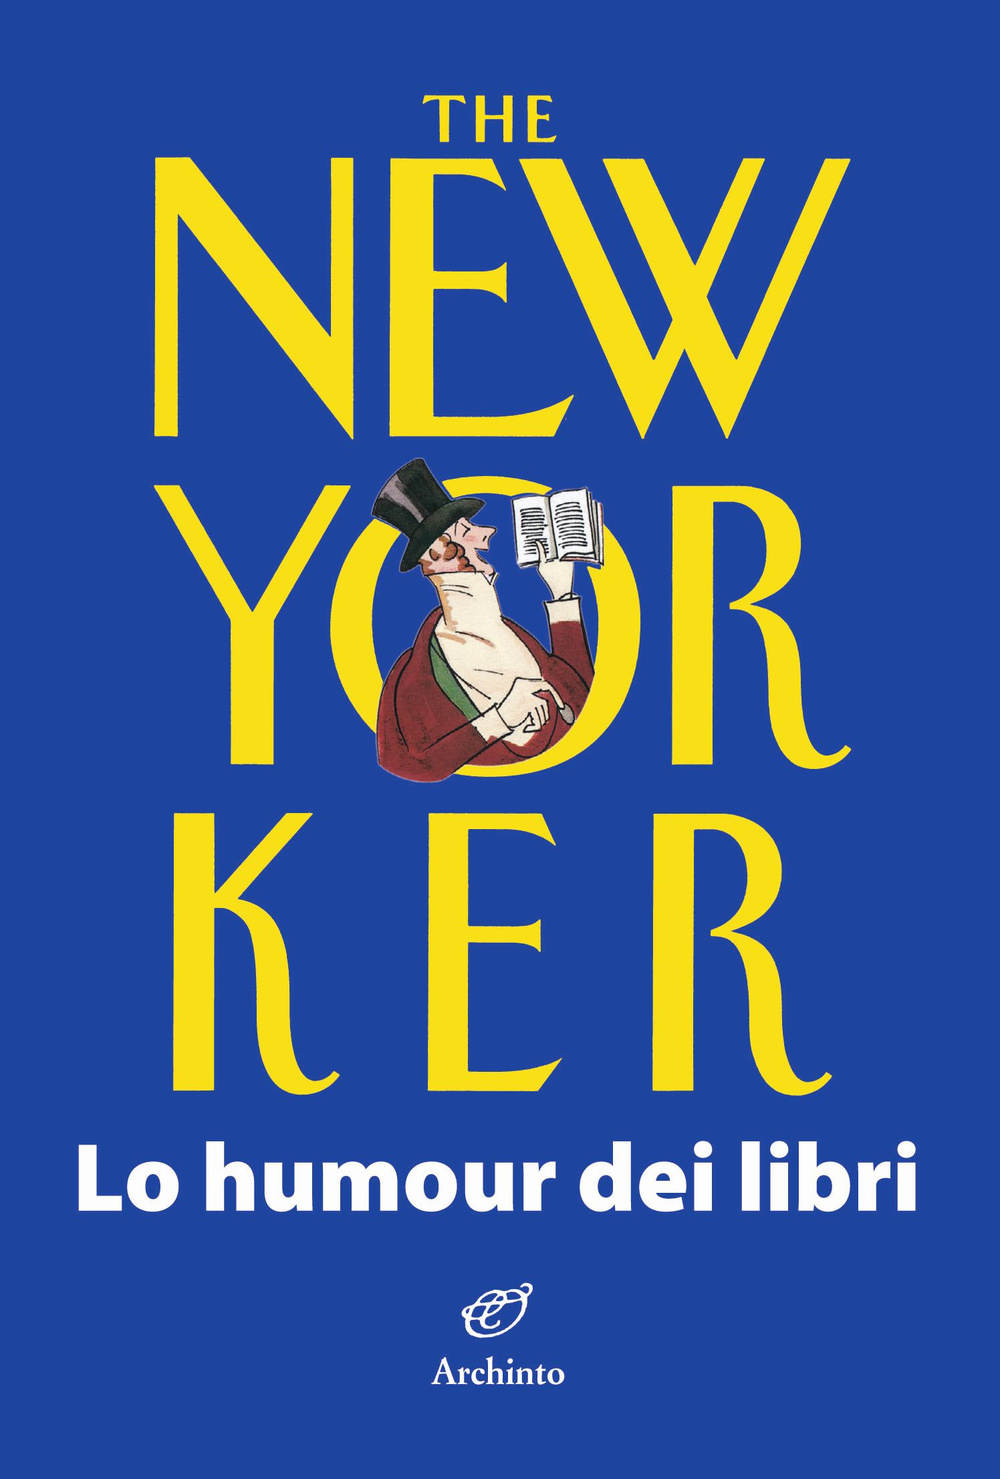 The New Yorker. Lo humour dei libri